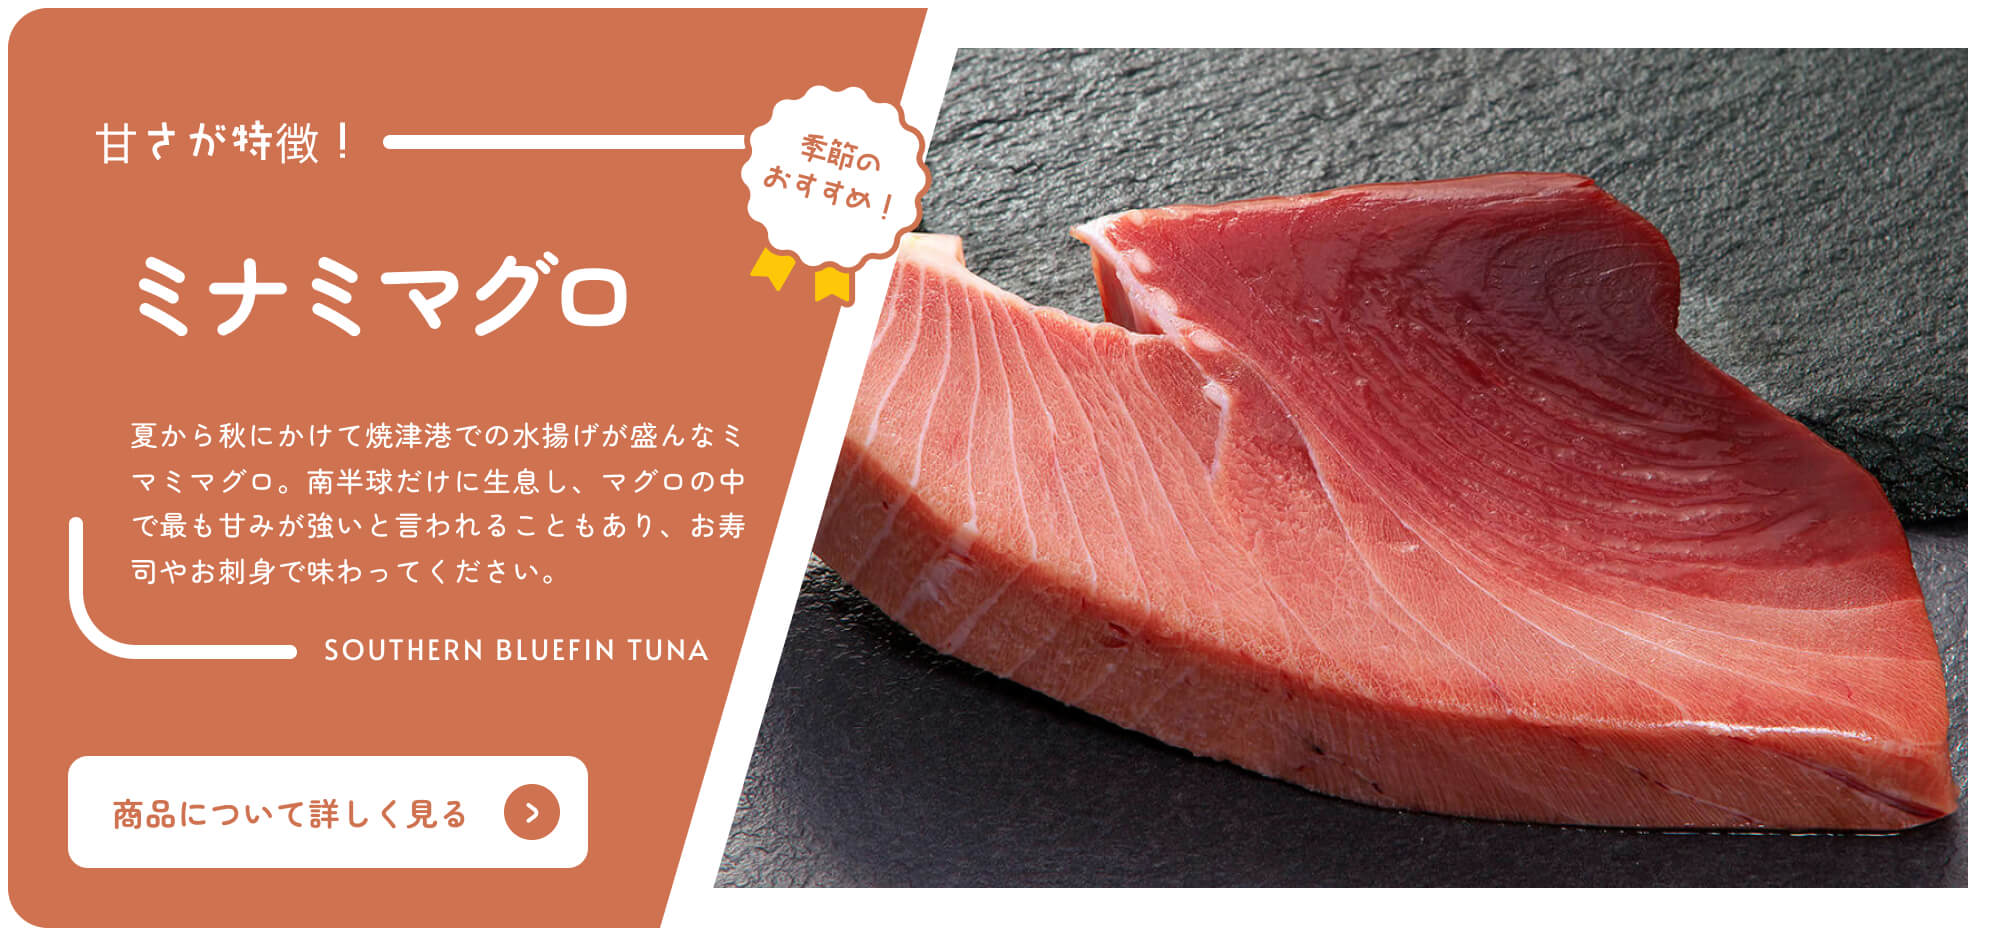 Comprar catálogo en línea de Shizuoka Atún rojo del sur recomendado por temporada